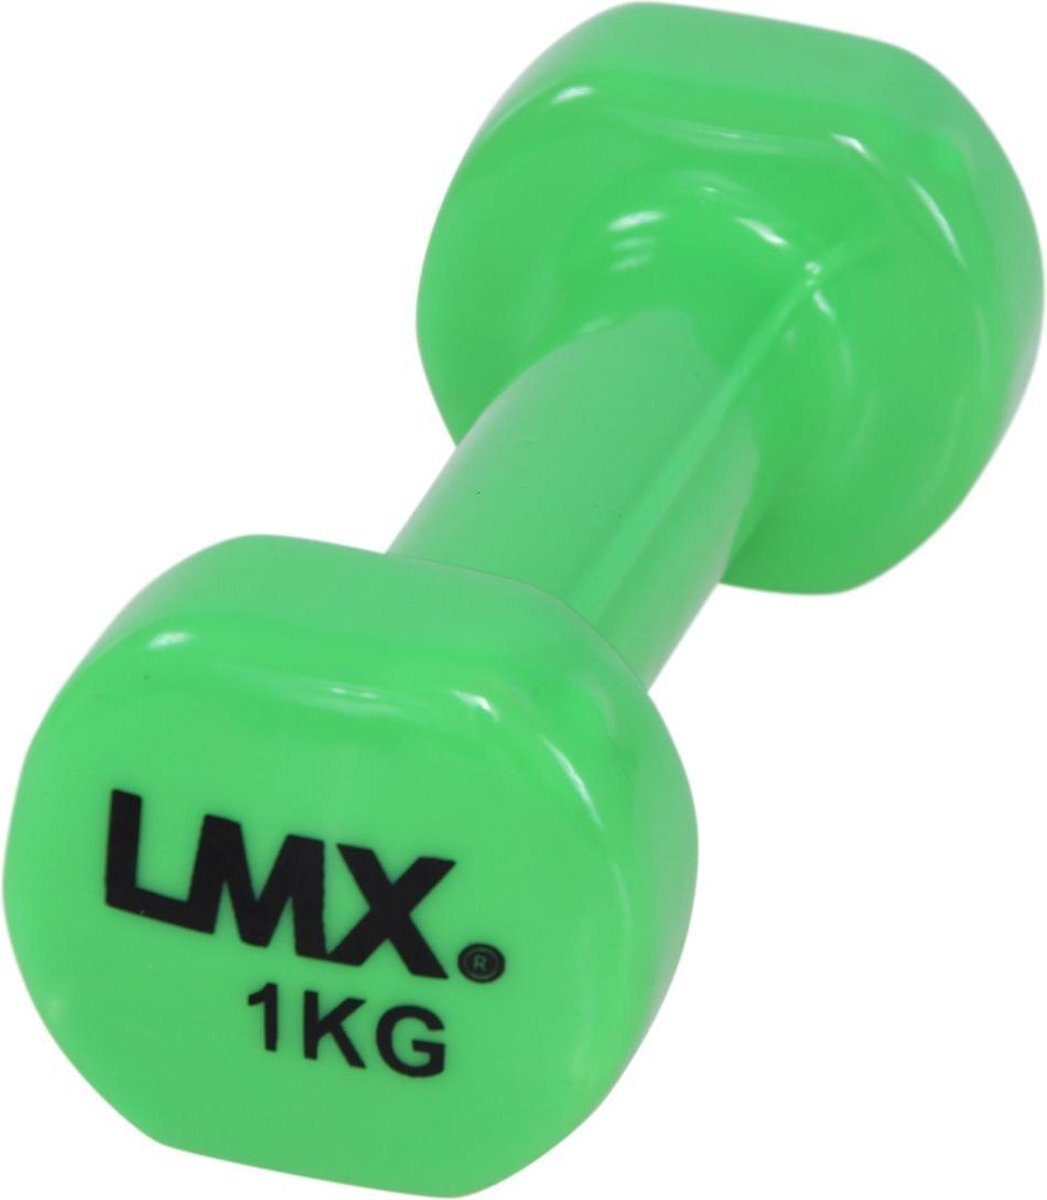 Lifemaxx LMX Dumbbells - 2 x 1,0 kg - Vinyl - Groen